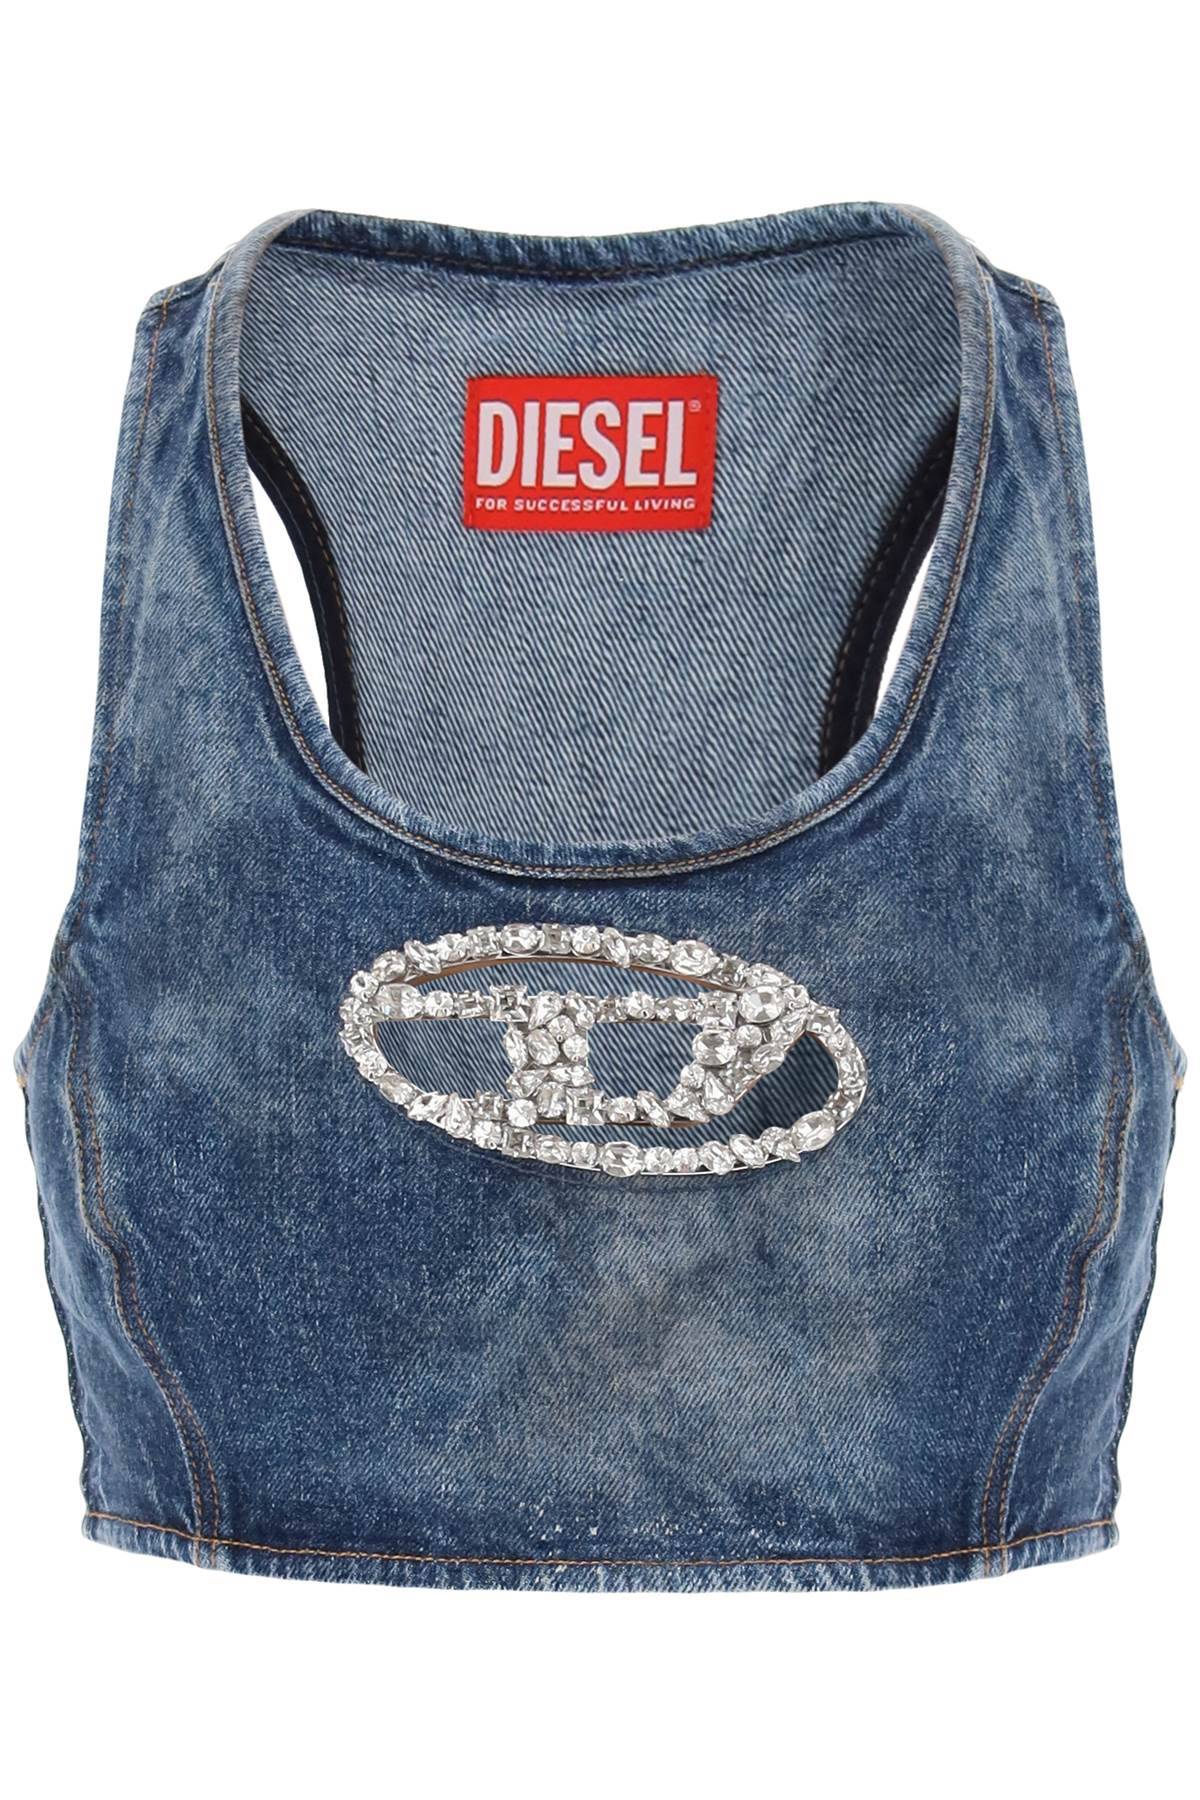 Diesel DIESEL denim crop top with jewel buckle